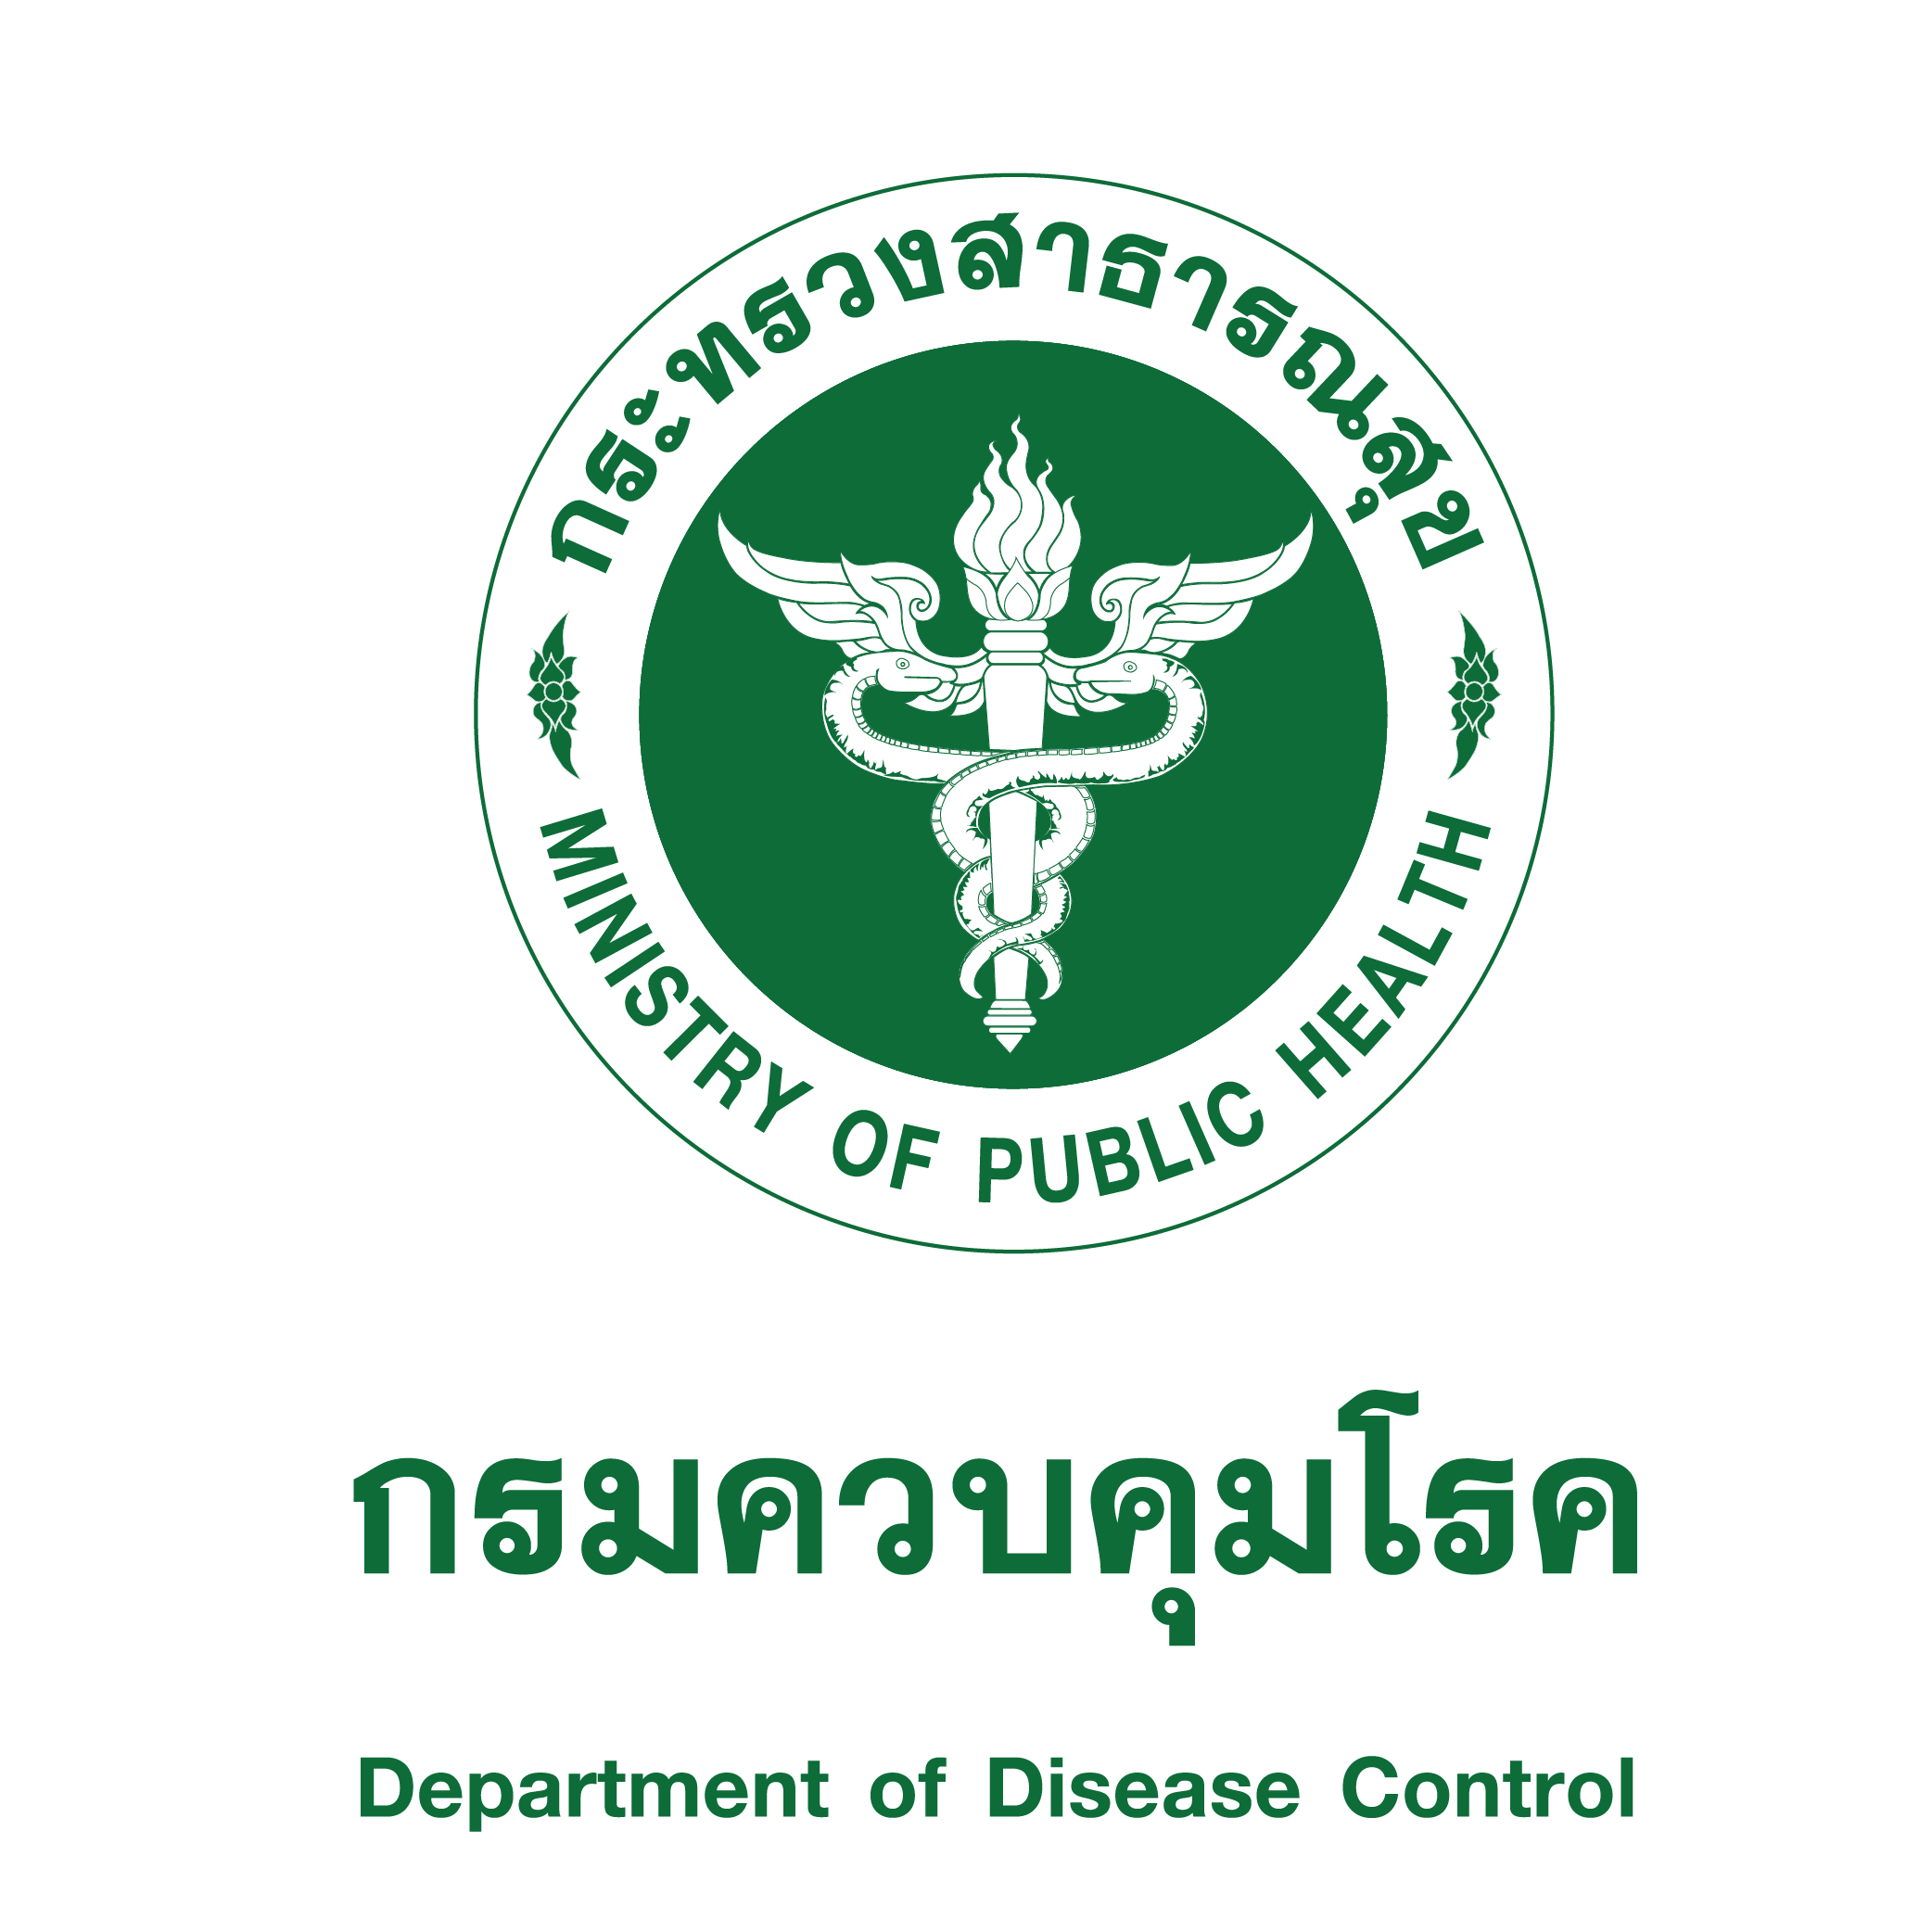 กลุ่มพัฒนาระบบบริหารองค์กรขอประชาสัมพันธ์ รับสมัครบุคลากรกรมควบคุมโรคเป็นคณะผู้แทนไทยเข้าร่วมประชุมสมัชชาอนามัยโลกสมัยที่ 77